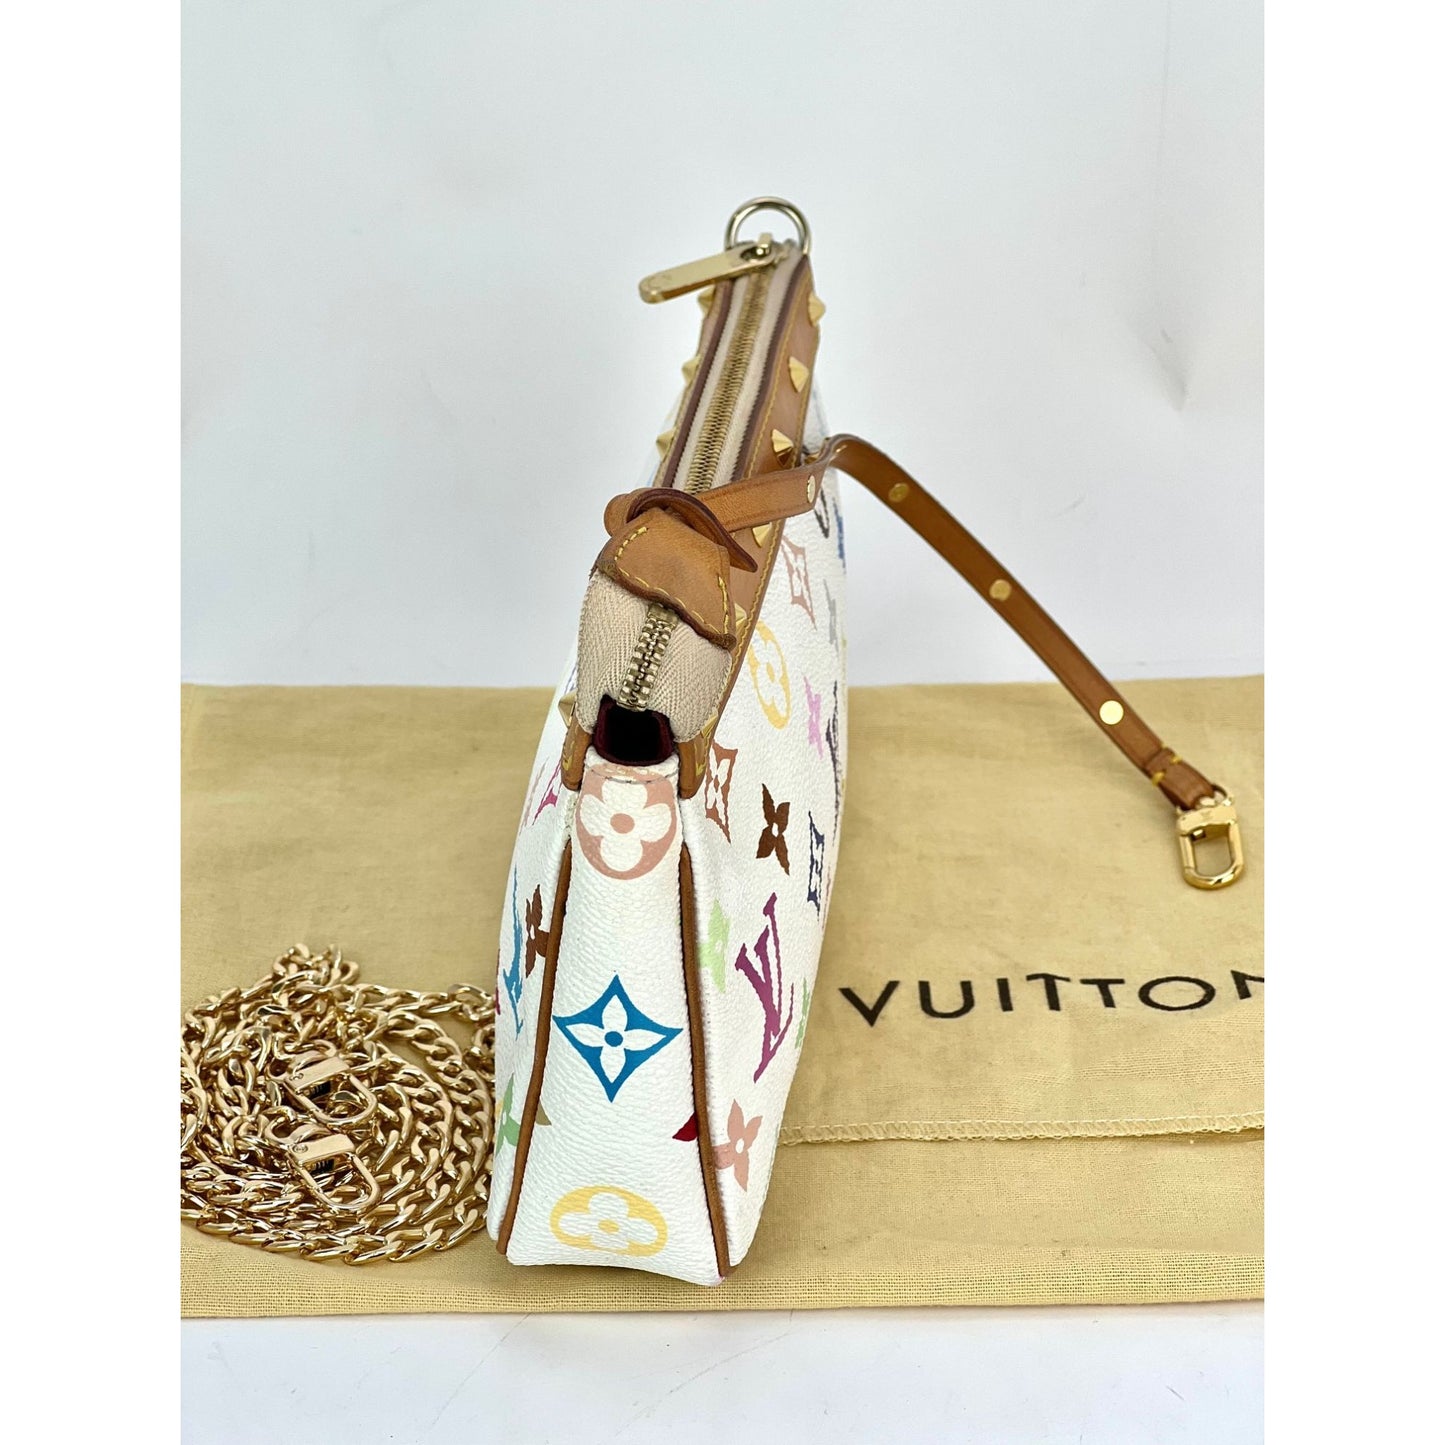 Louis Vuitton - Authenticated Pochette Accessoire Handbag - Cloth Multicolour For Woman, Very Good Condition